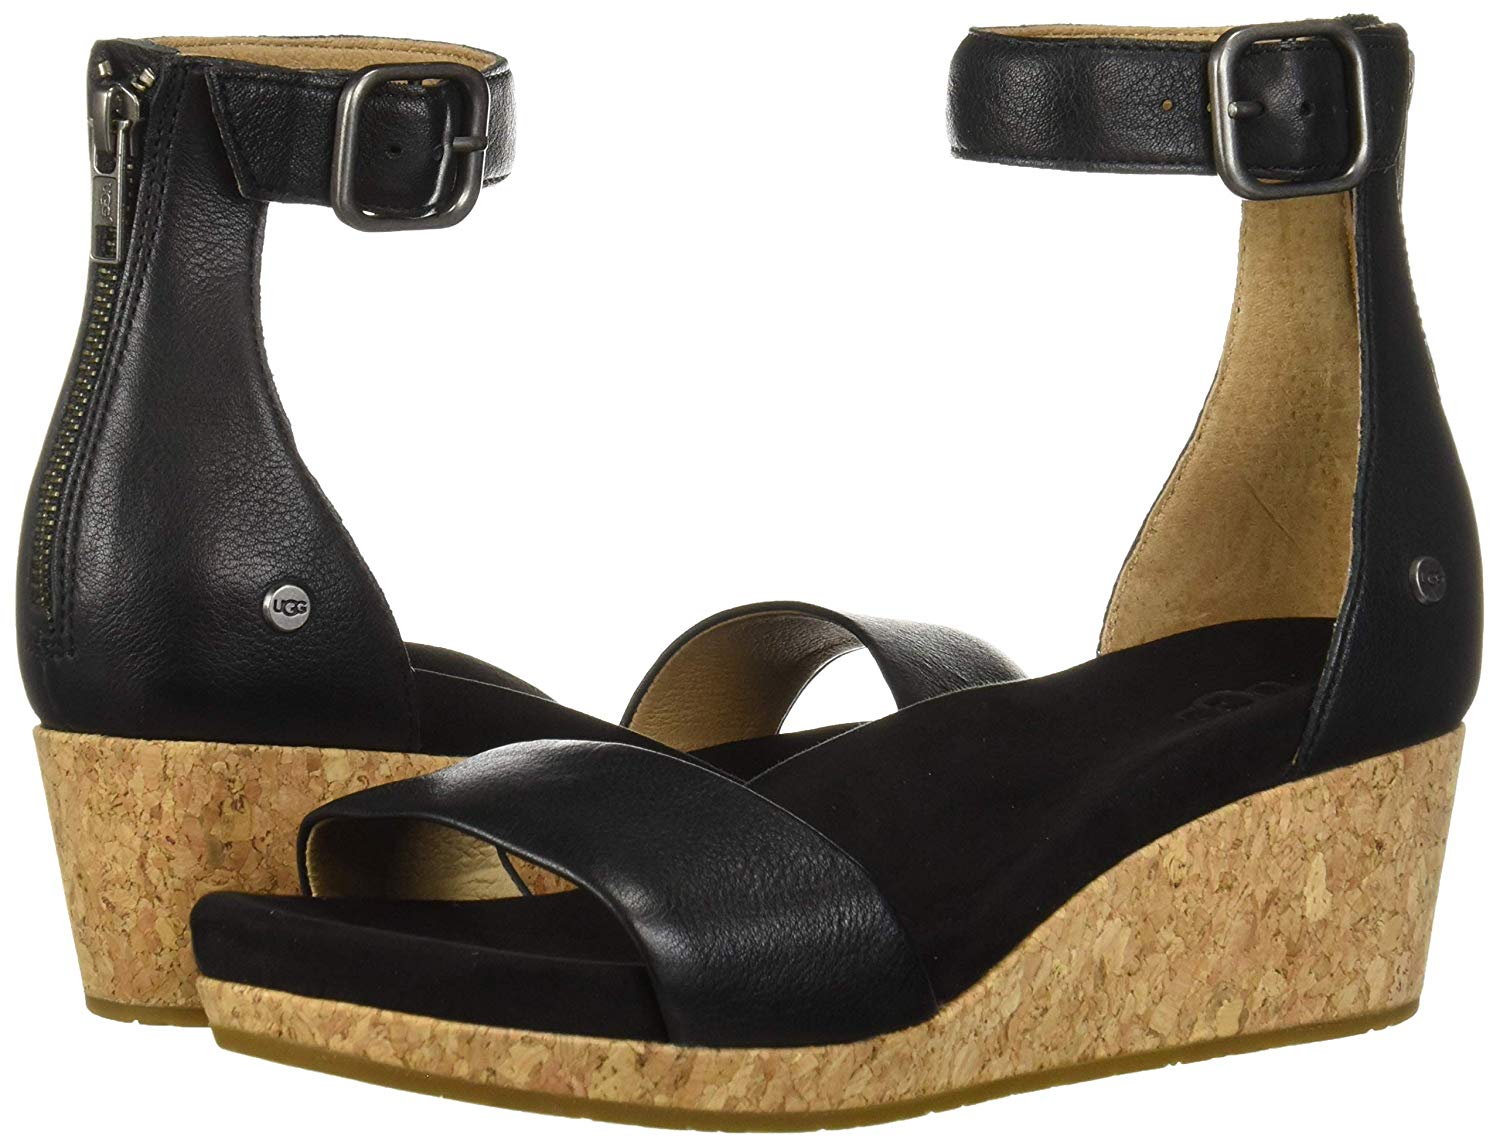 Ugg Australia Womens Platform Sandals in Black Color, Size 9 CYR ...